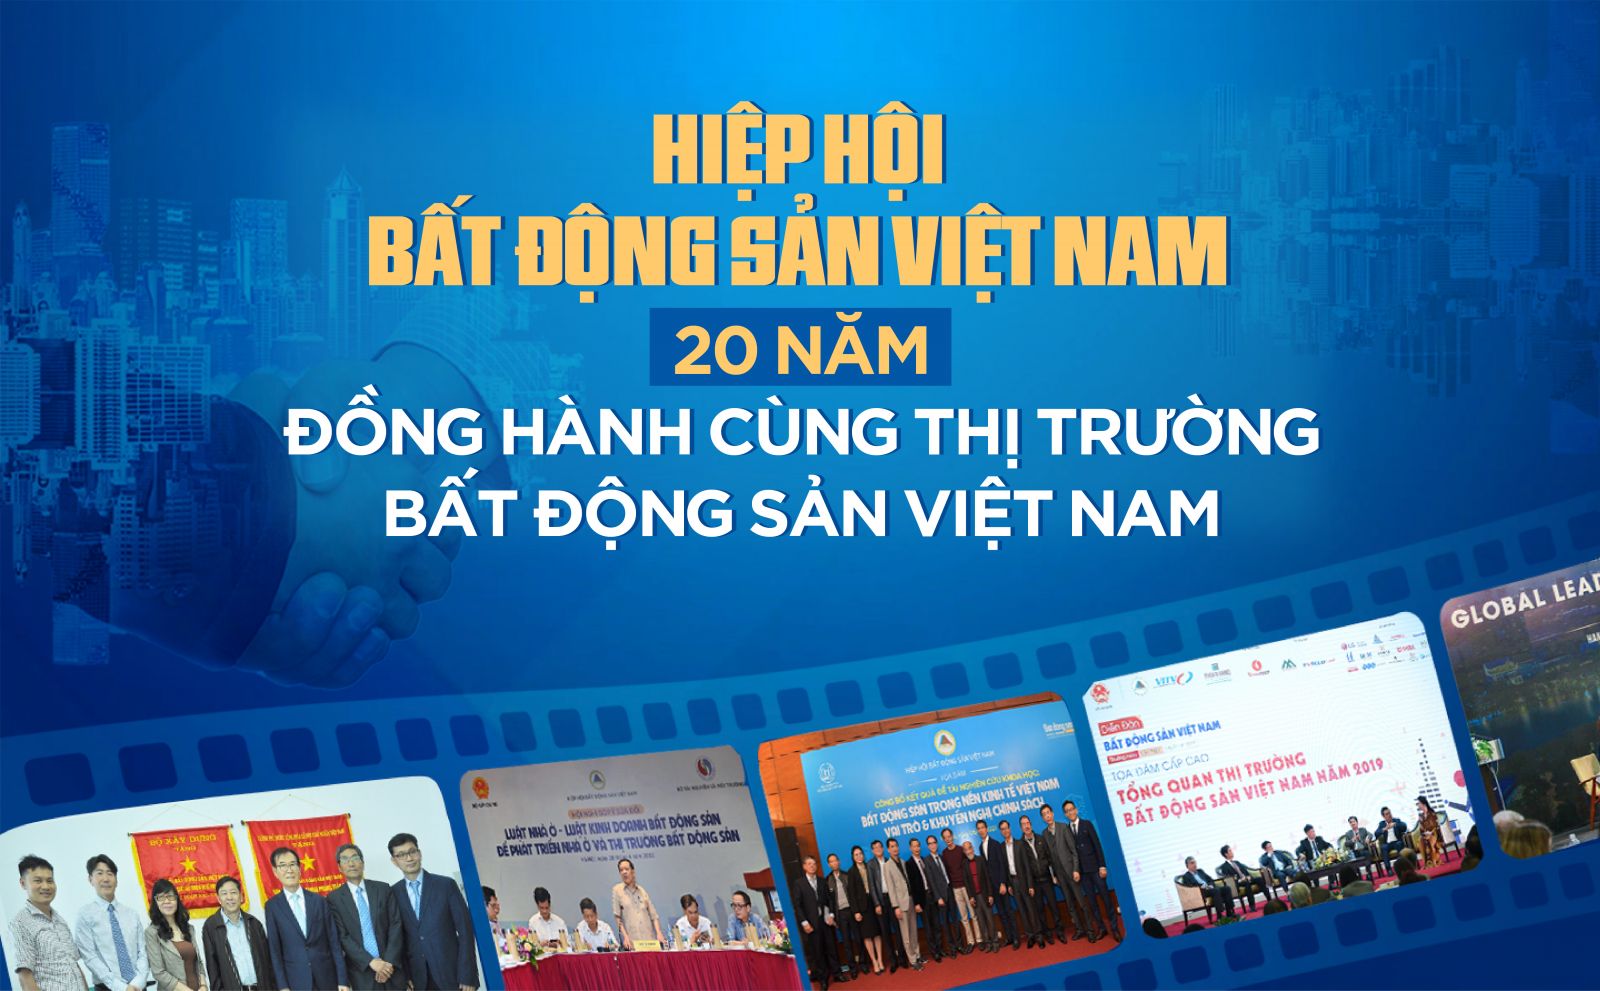 Hiệp hội Bất động sản Việt Nam – 20 năm đồng hành cùng thị trường bất động sản Việt Nam